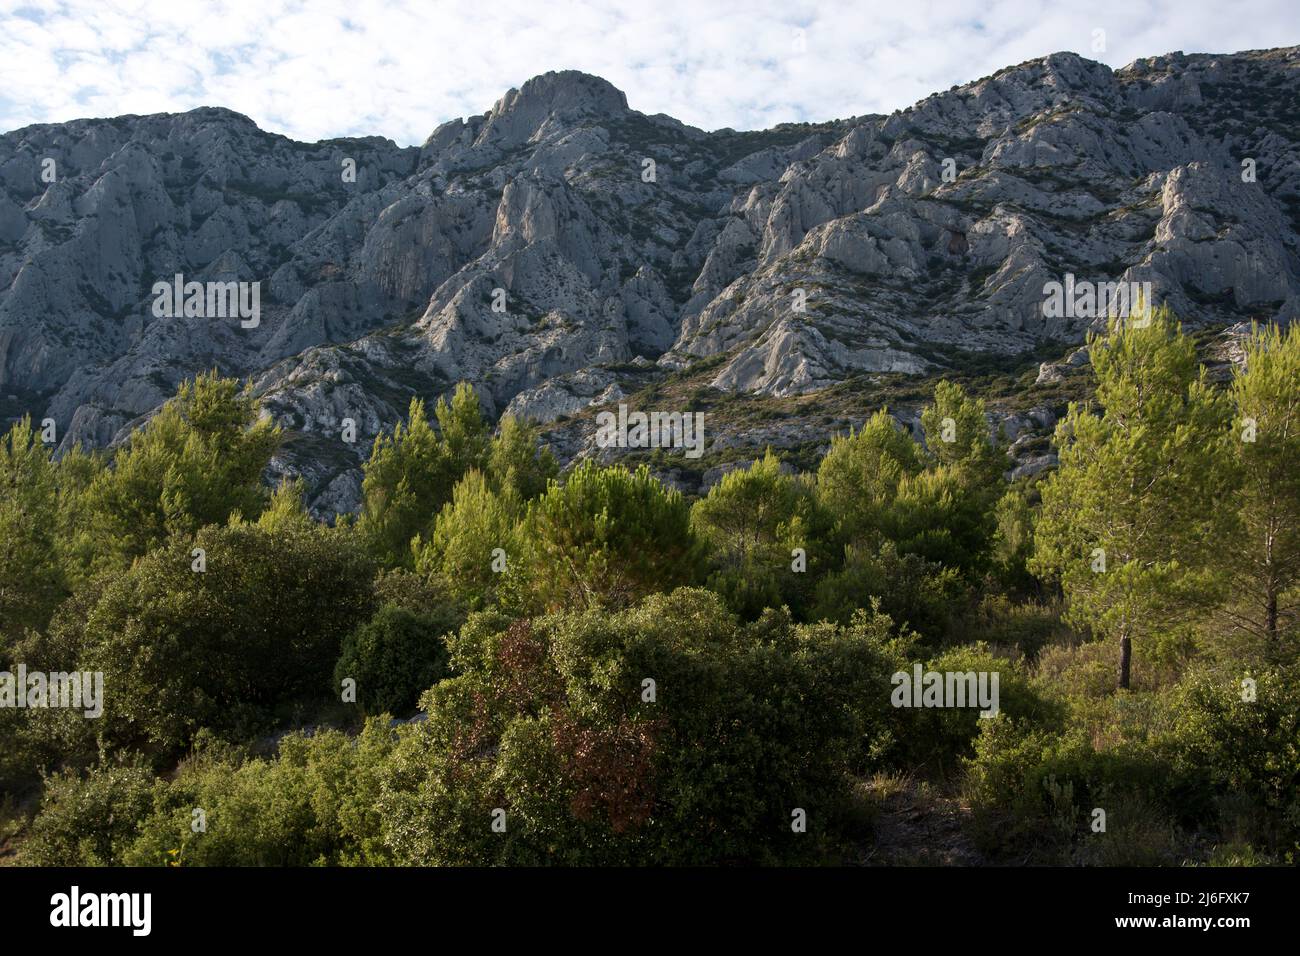 Die spektakuläre Montagne Sainte-Victoire, Kalksteingebirge im Süden Frankreichs in der Nähe von Aix-en-Provence Stock Photo